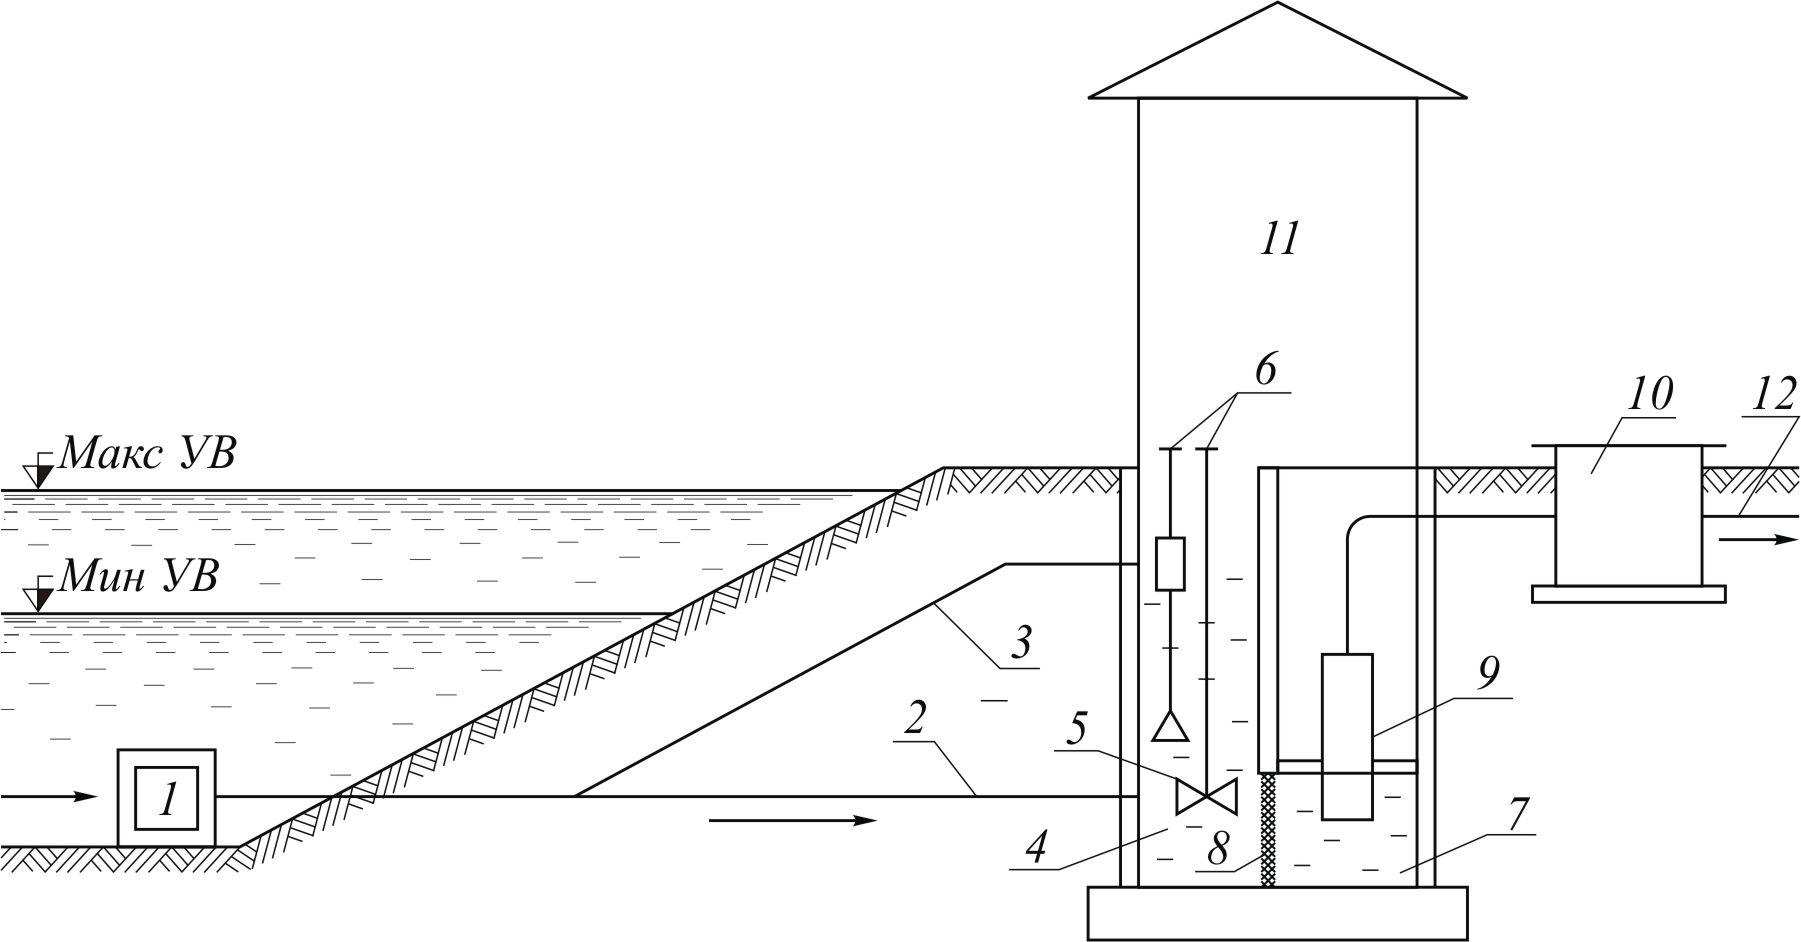 Что такое водозаборное сооружение и для чего оно предназначено